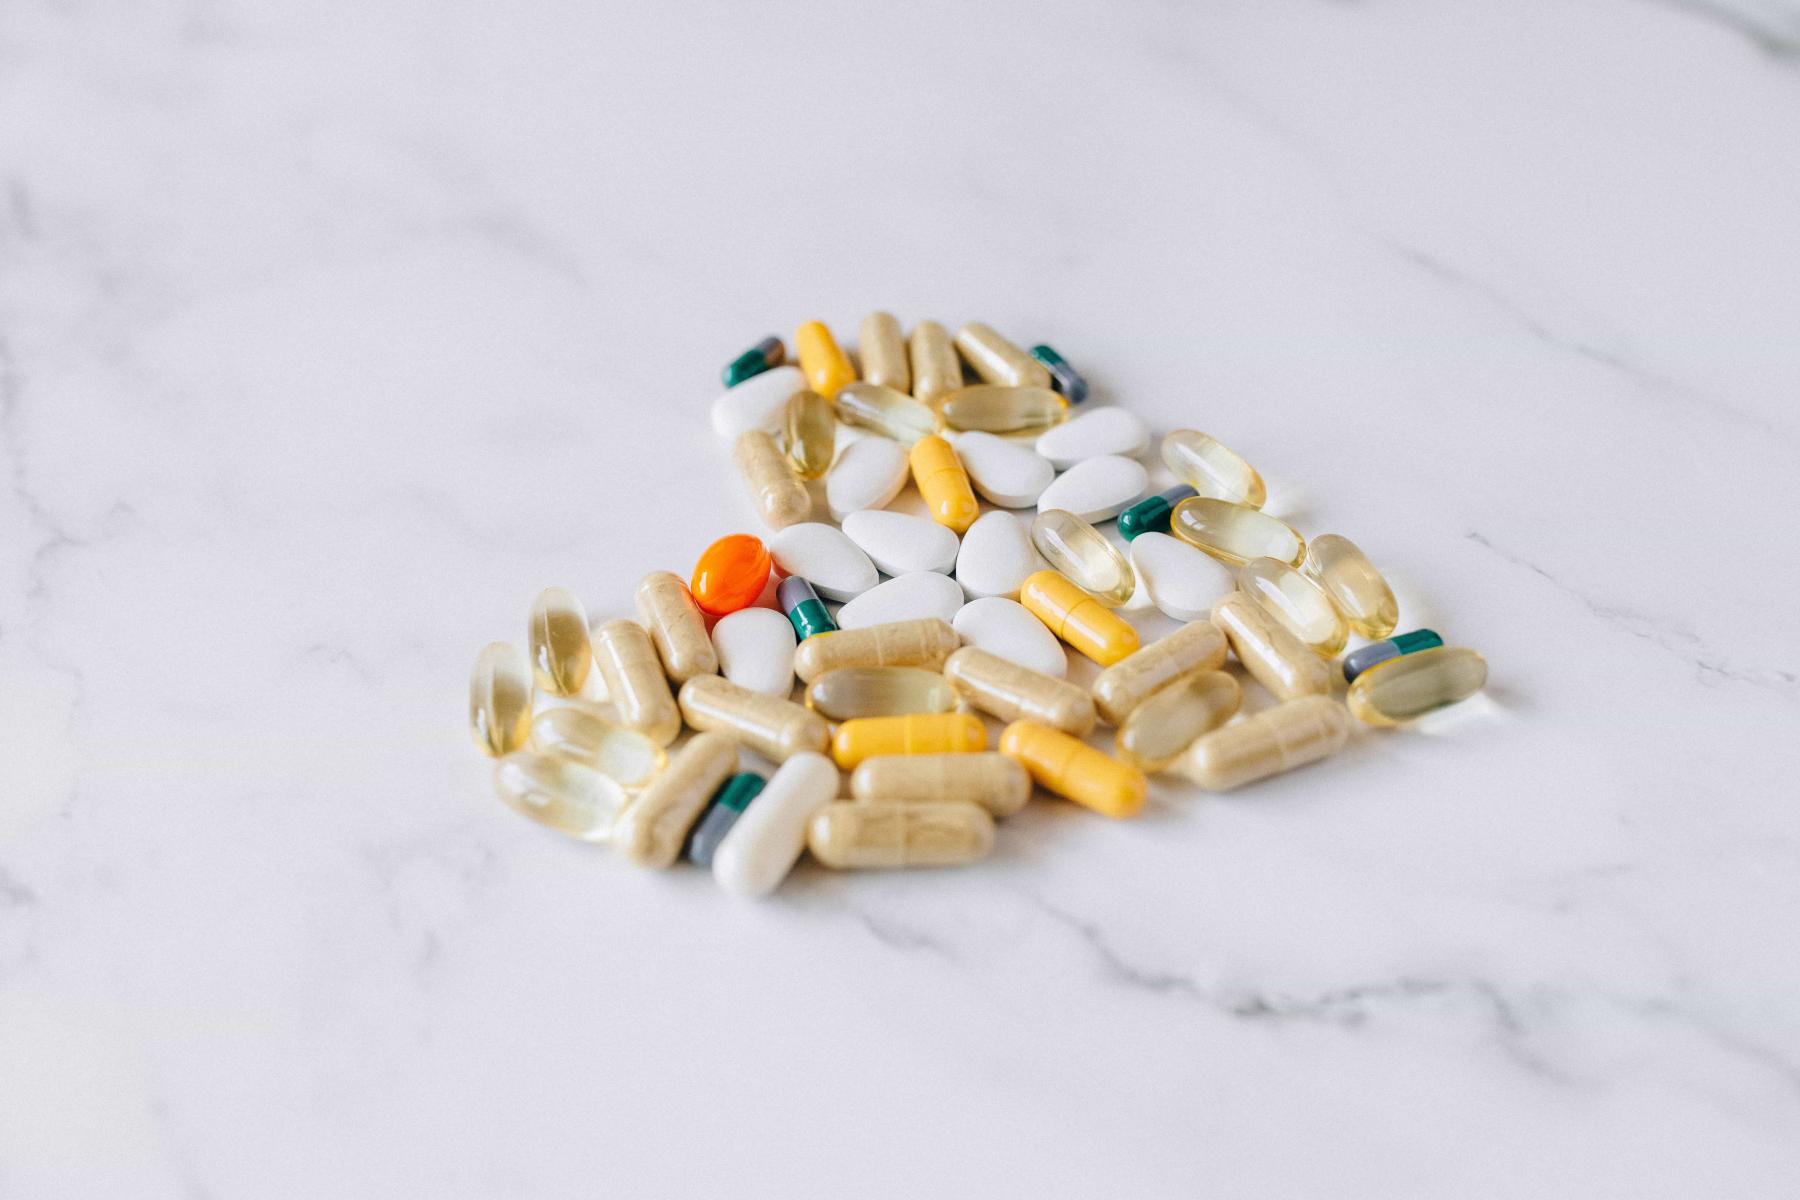 Supplement pills in a heart shape